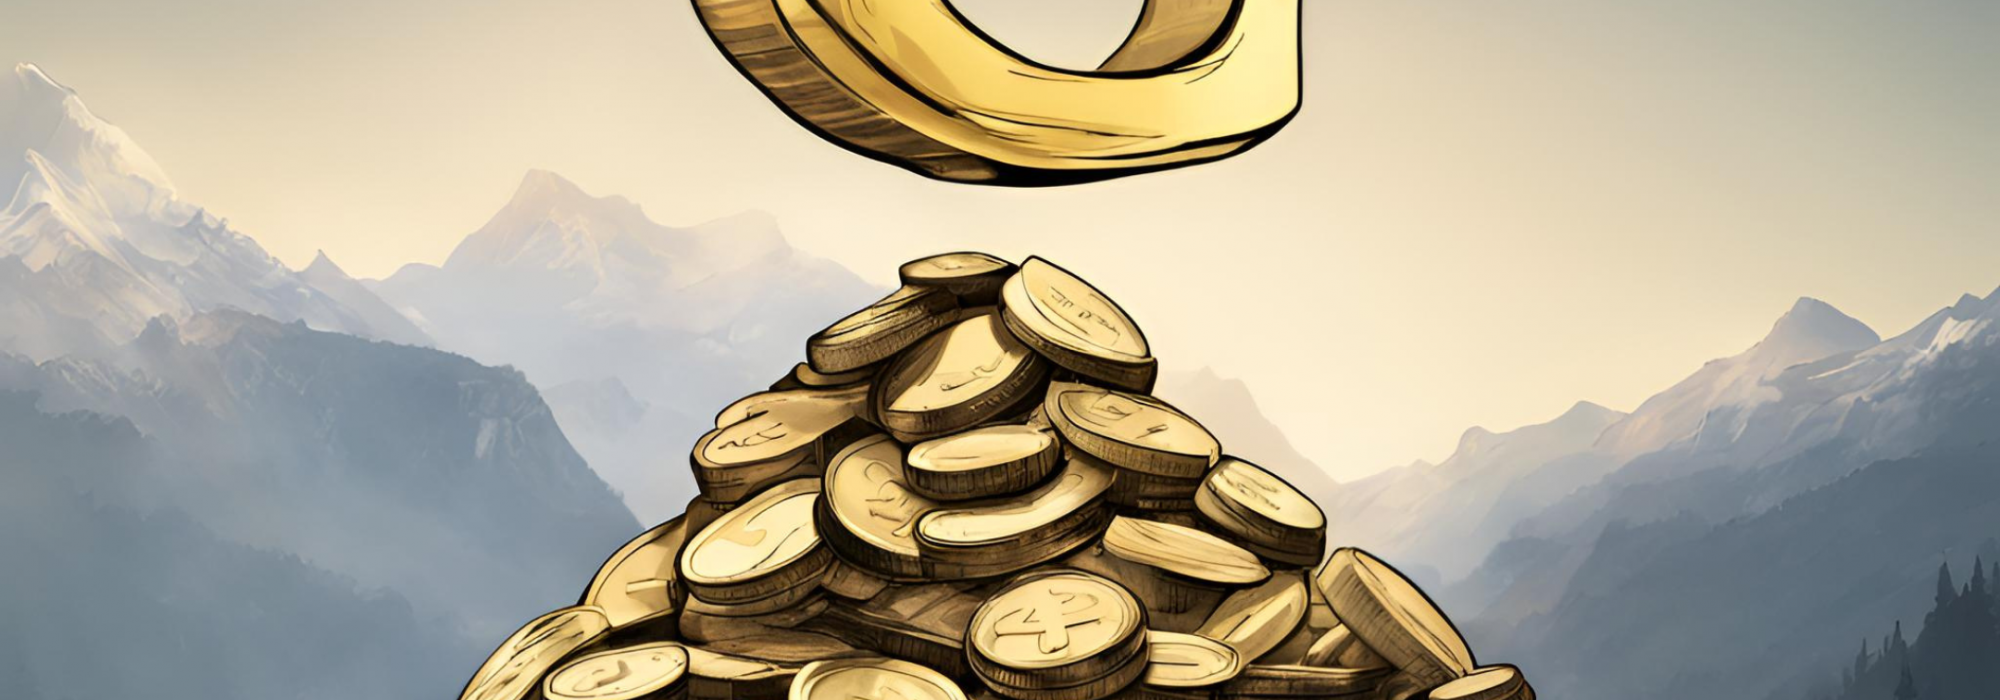 Ein Berg von Münzen